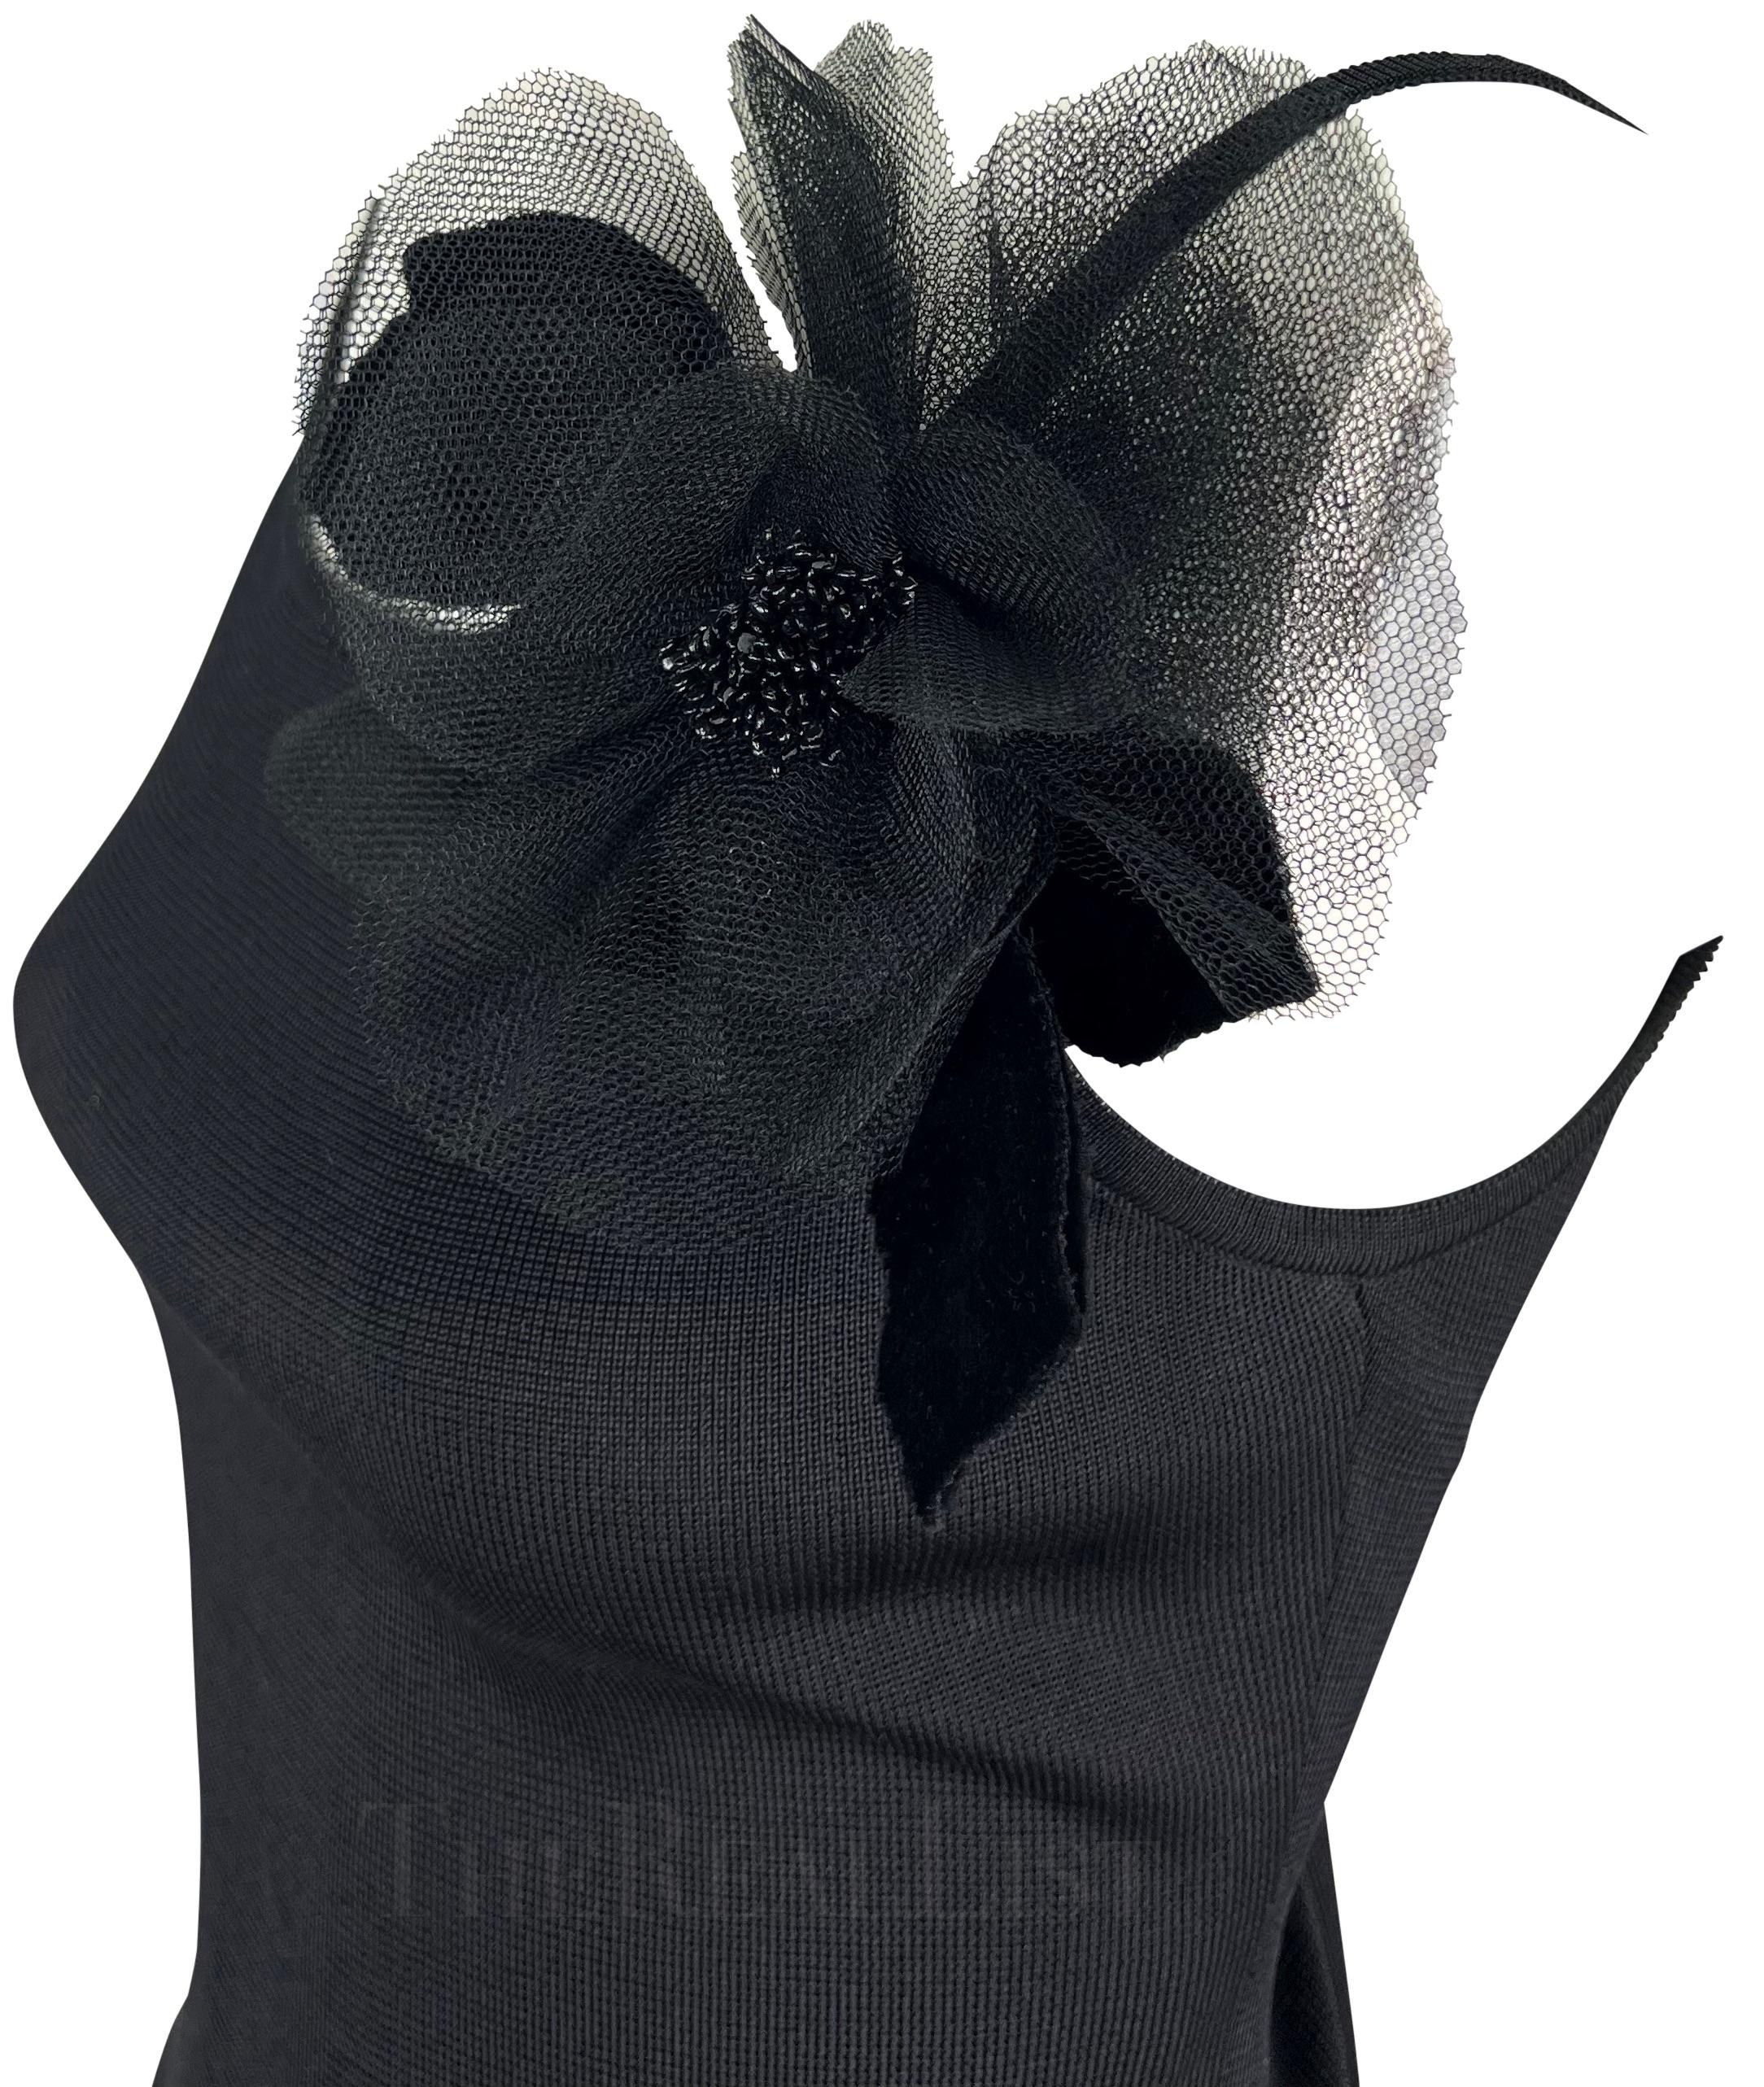 Ich präsentiere Ihnen ein fabelhaftes schwarzes Yves Saint Laurent-Strickhemd. Dieses Oberteil aus den 1990er Jahren hat einen Rundhalsausschnitt, Spaghetti-Träger und eine große schwarze Blumenapplikation auf einer Schulter.

Ungefähre Maße:
Größe